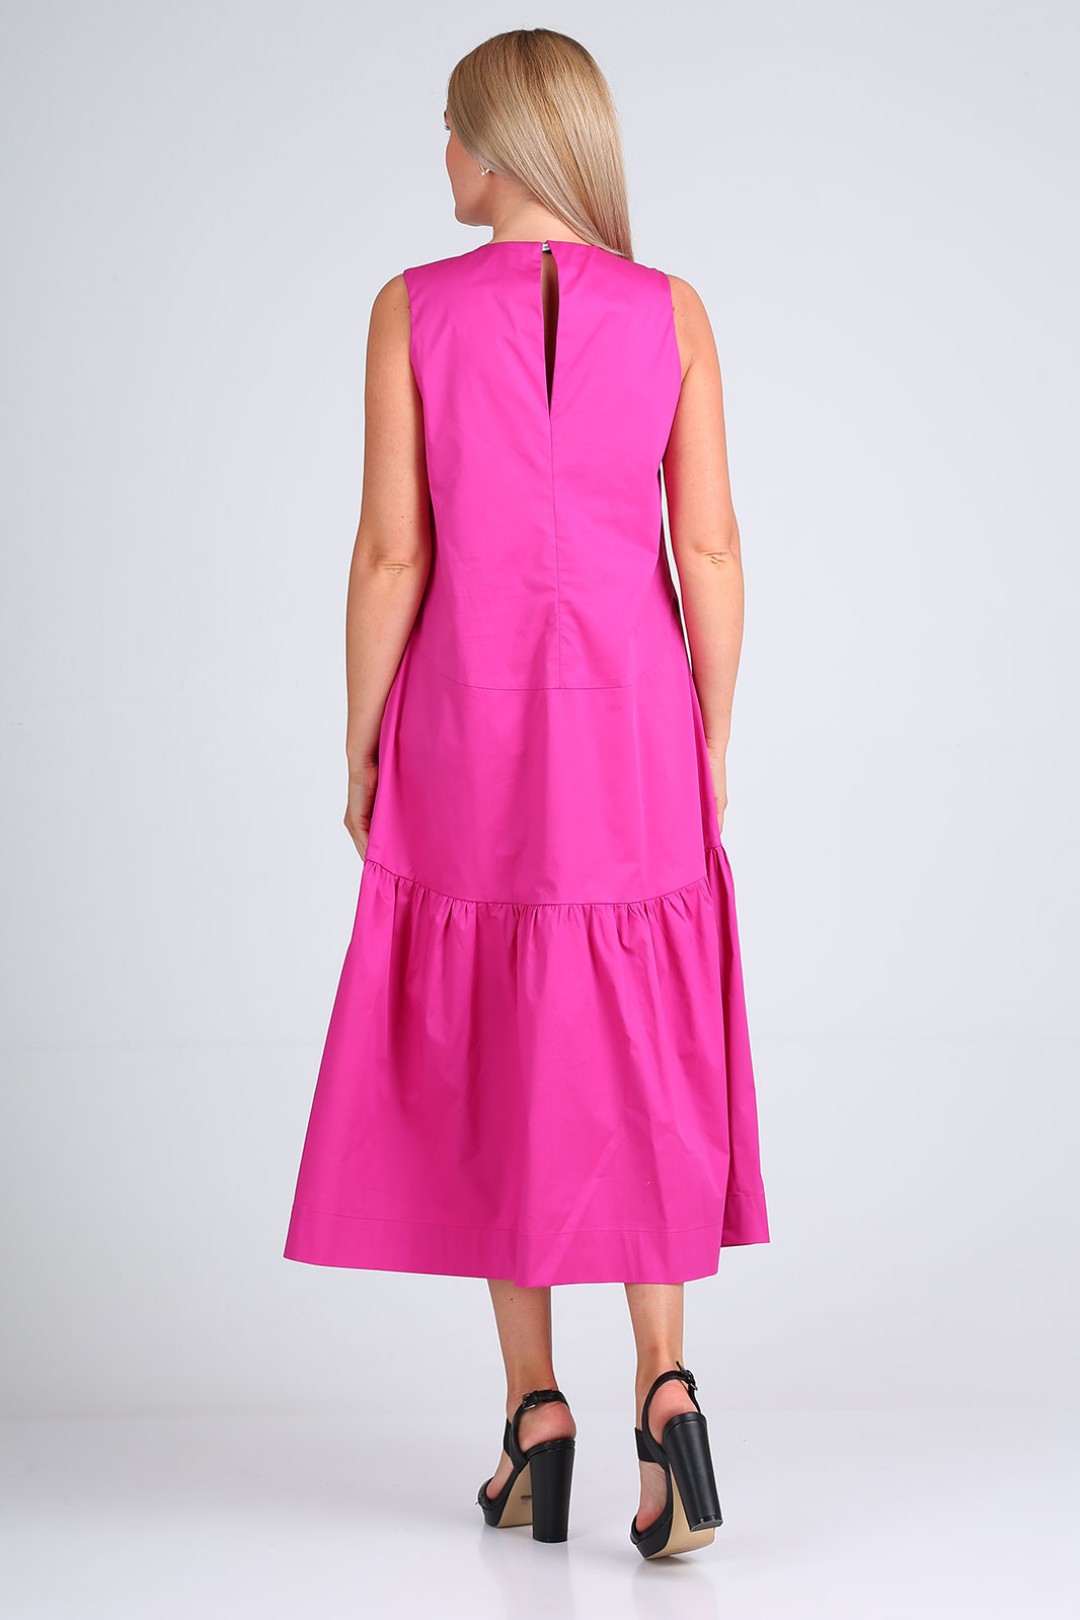 Платье FloVia 4084 розово-фиолетовый